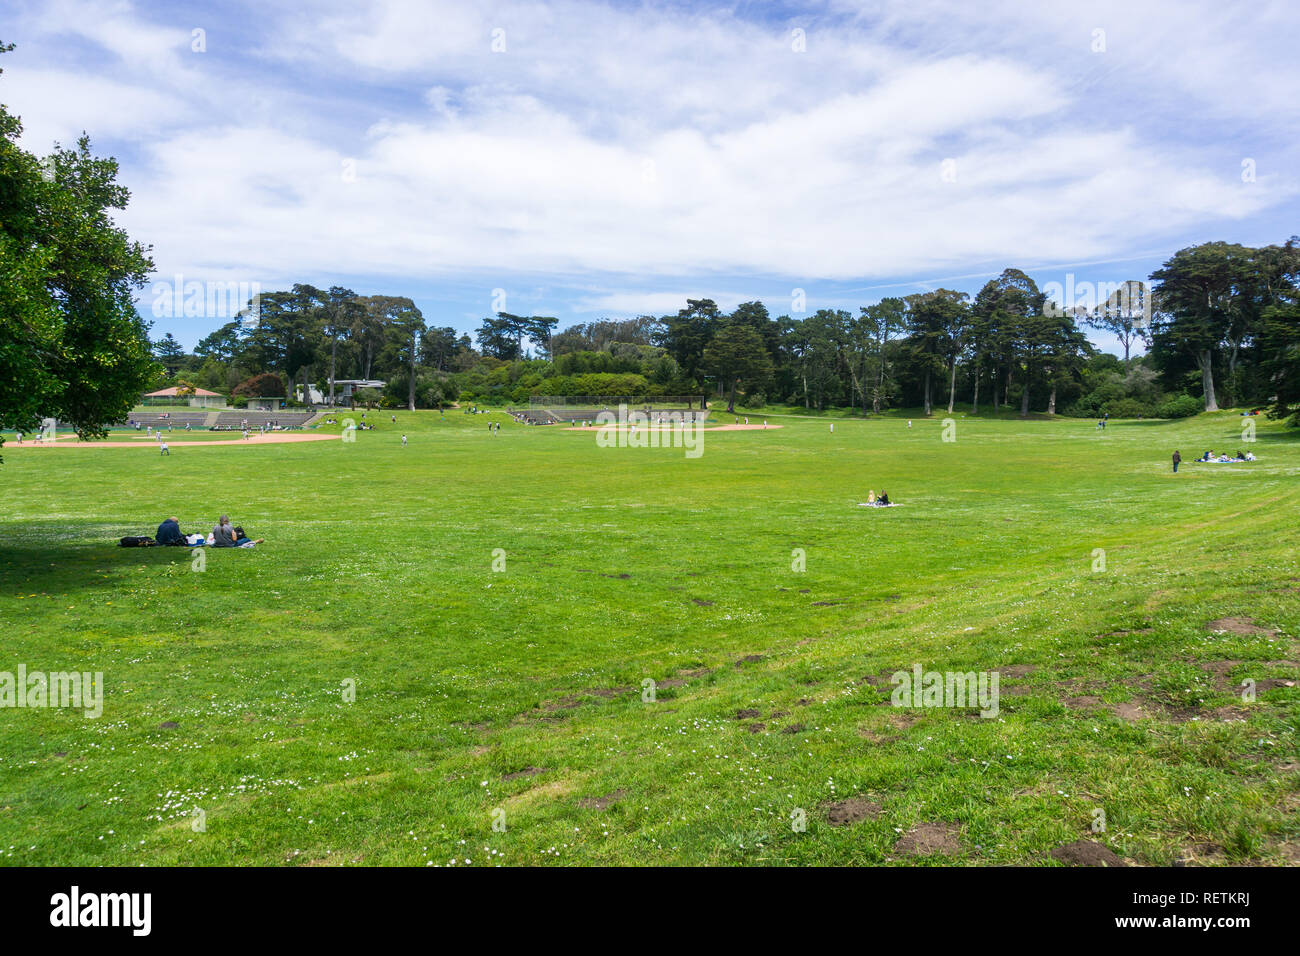 6 mai 2018 San Francisco / CA / USA - personnes bénéficiant d'une belle journée sur l'une des vertes prairies dans le Golden Gate Park, terrains de baseball dans le background Banque D'Images